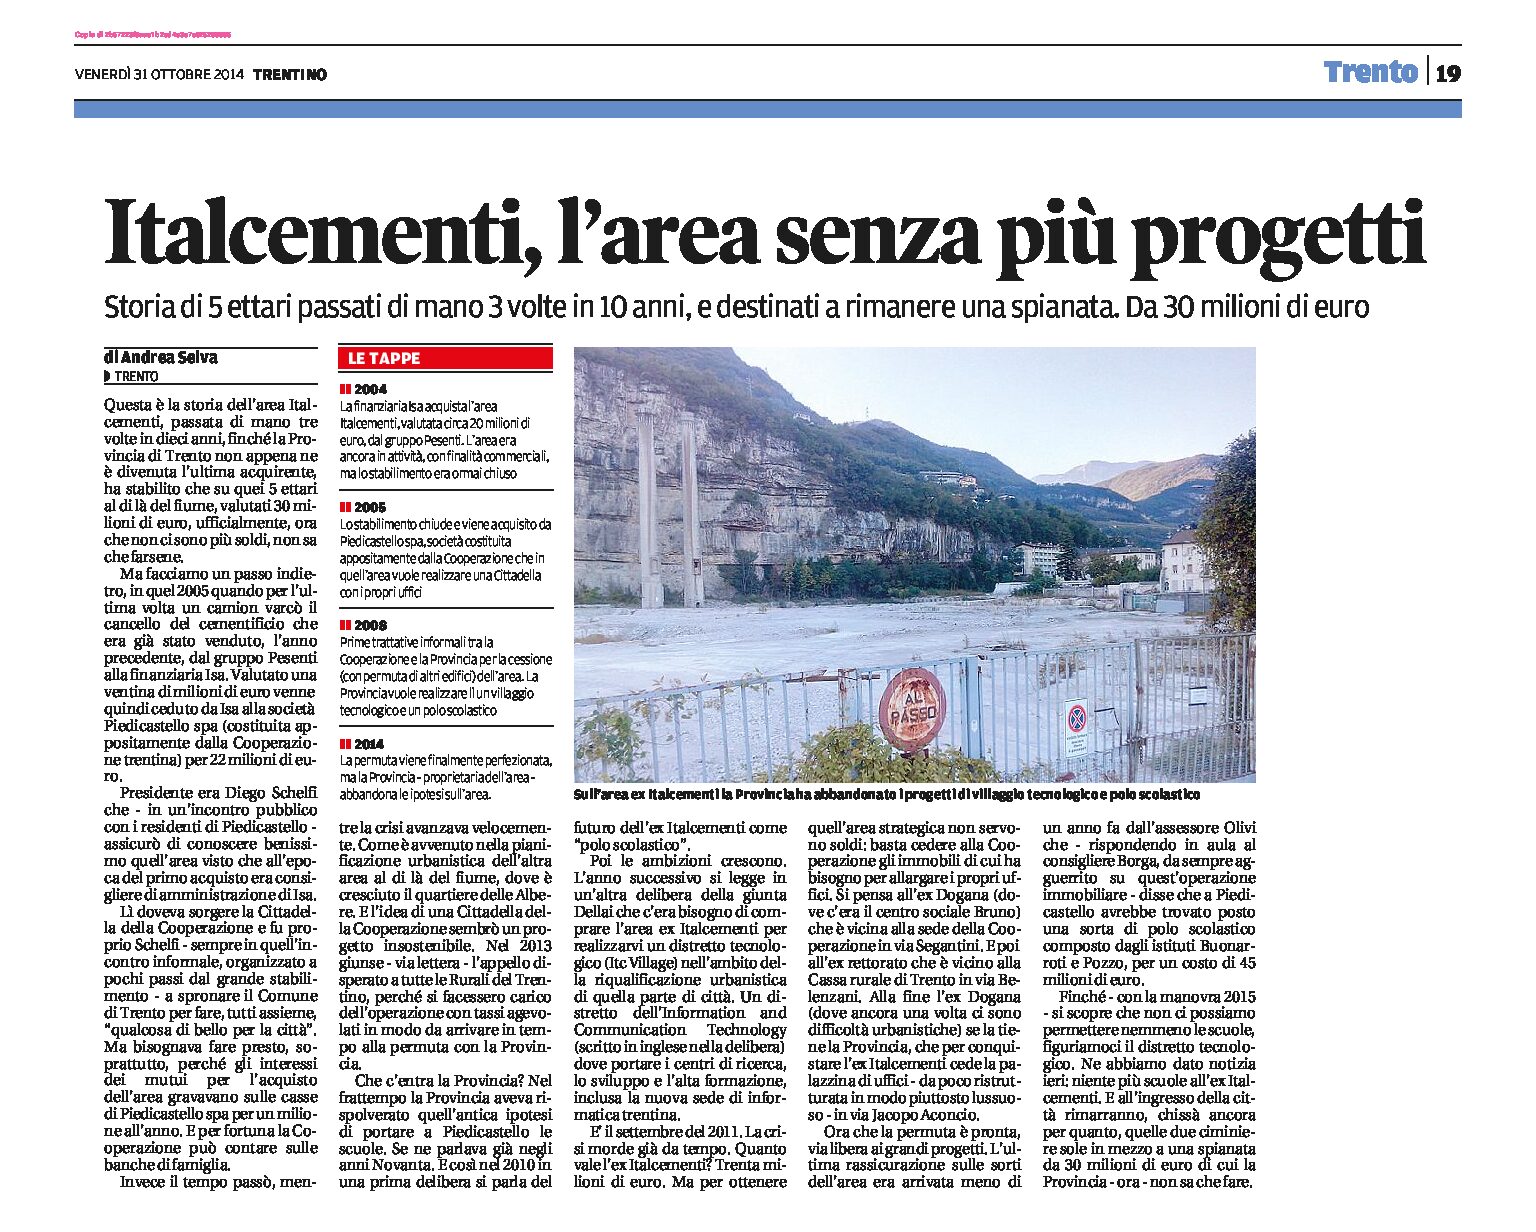 Trento: Italcementi, area senza più progetti